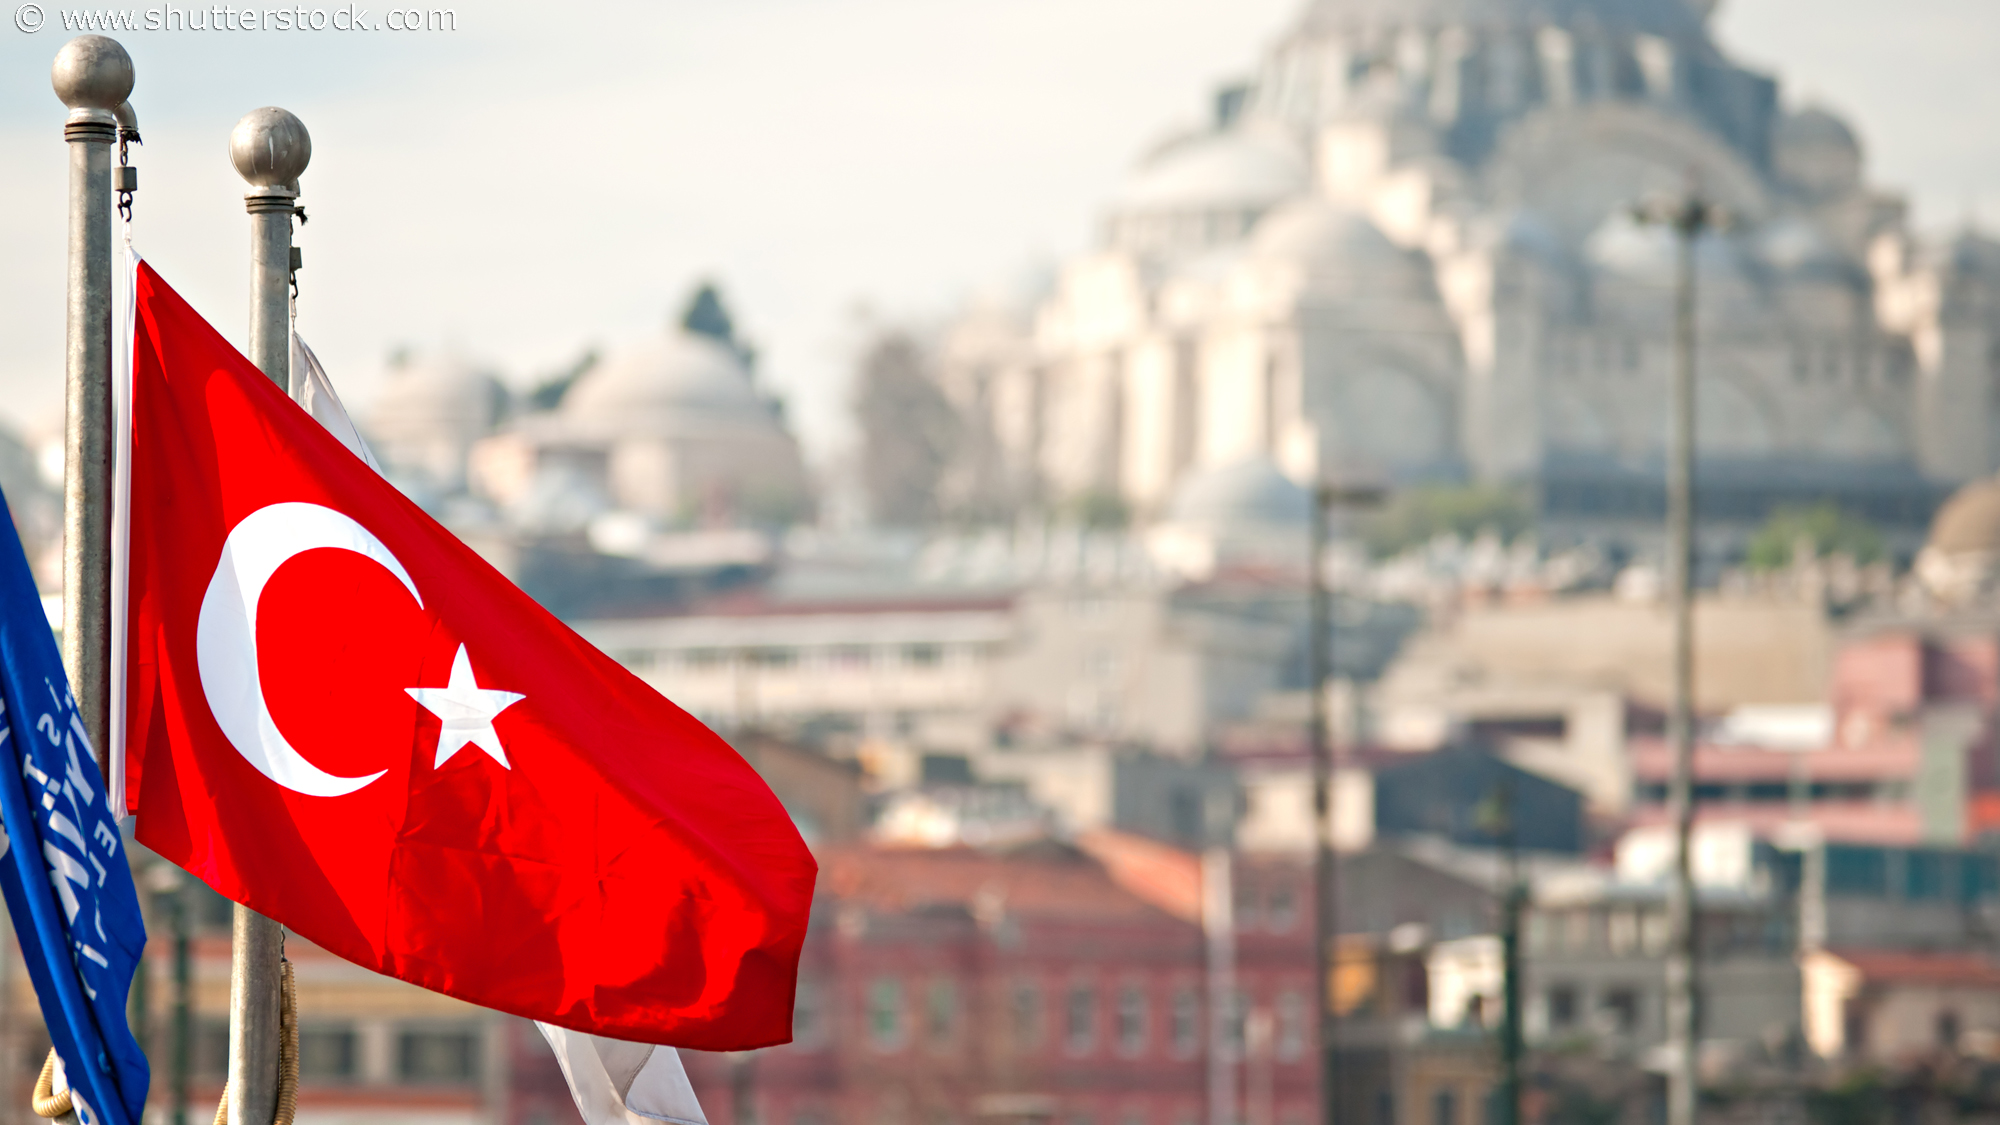 Die türkische Regierung missachtet Pressefreiheit und Menschenrechte